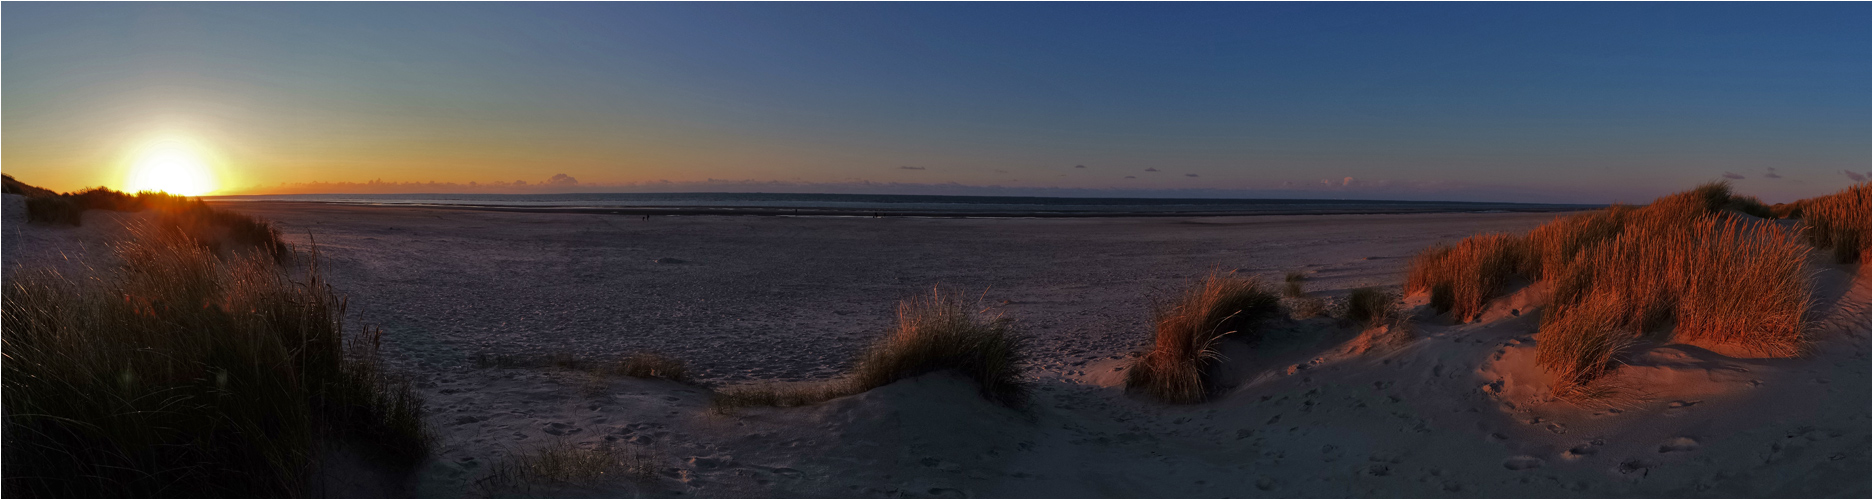 Sonnenuntergang am Strand von Langeoog - Panorama